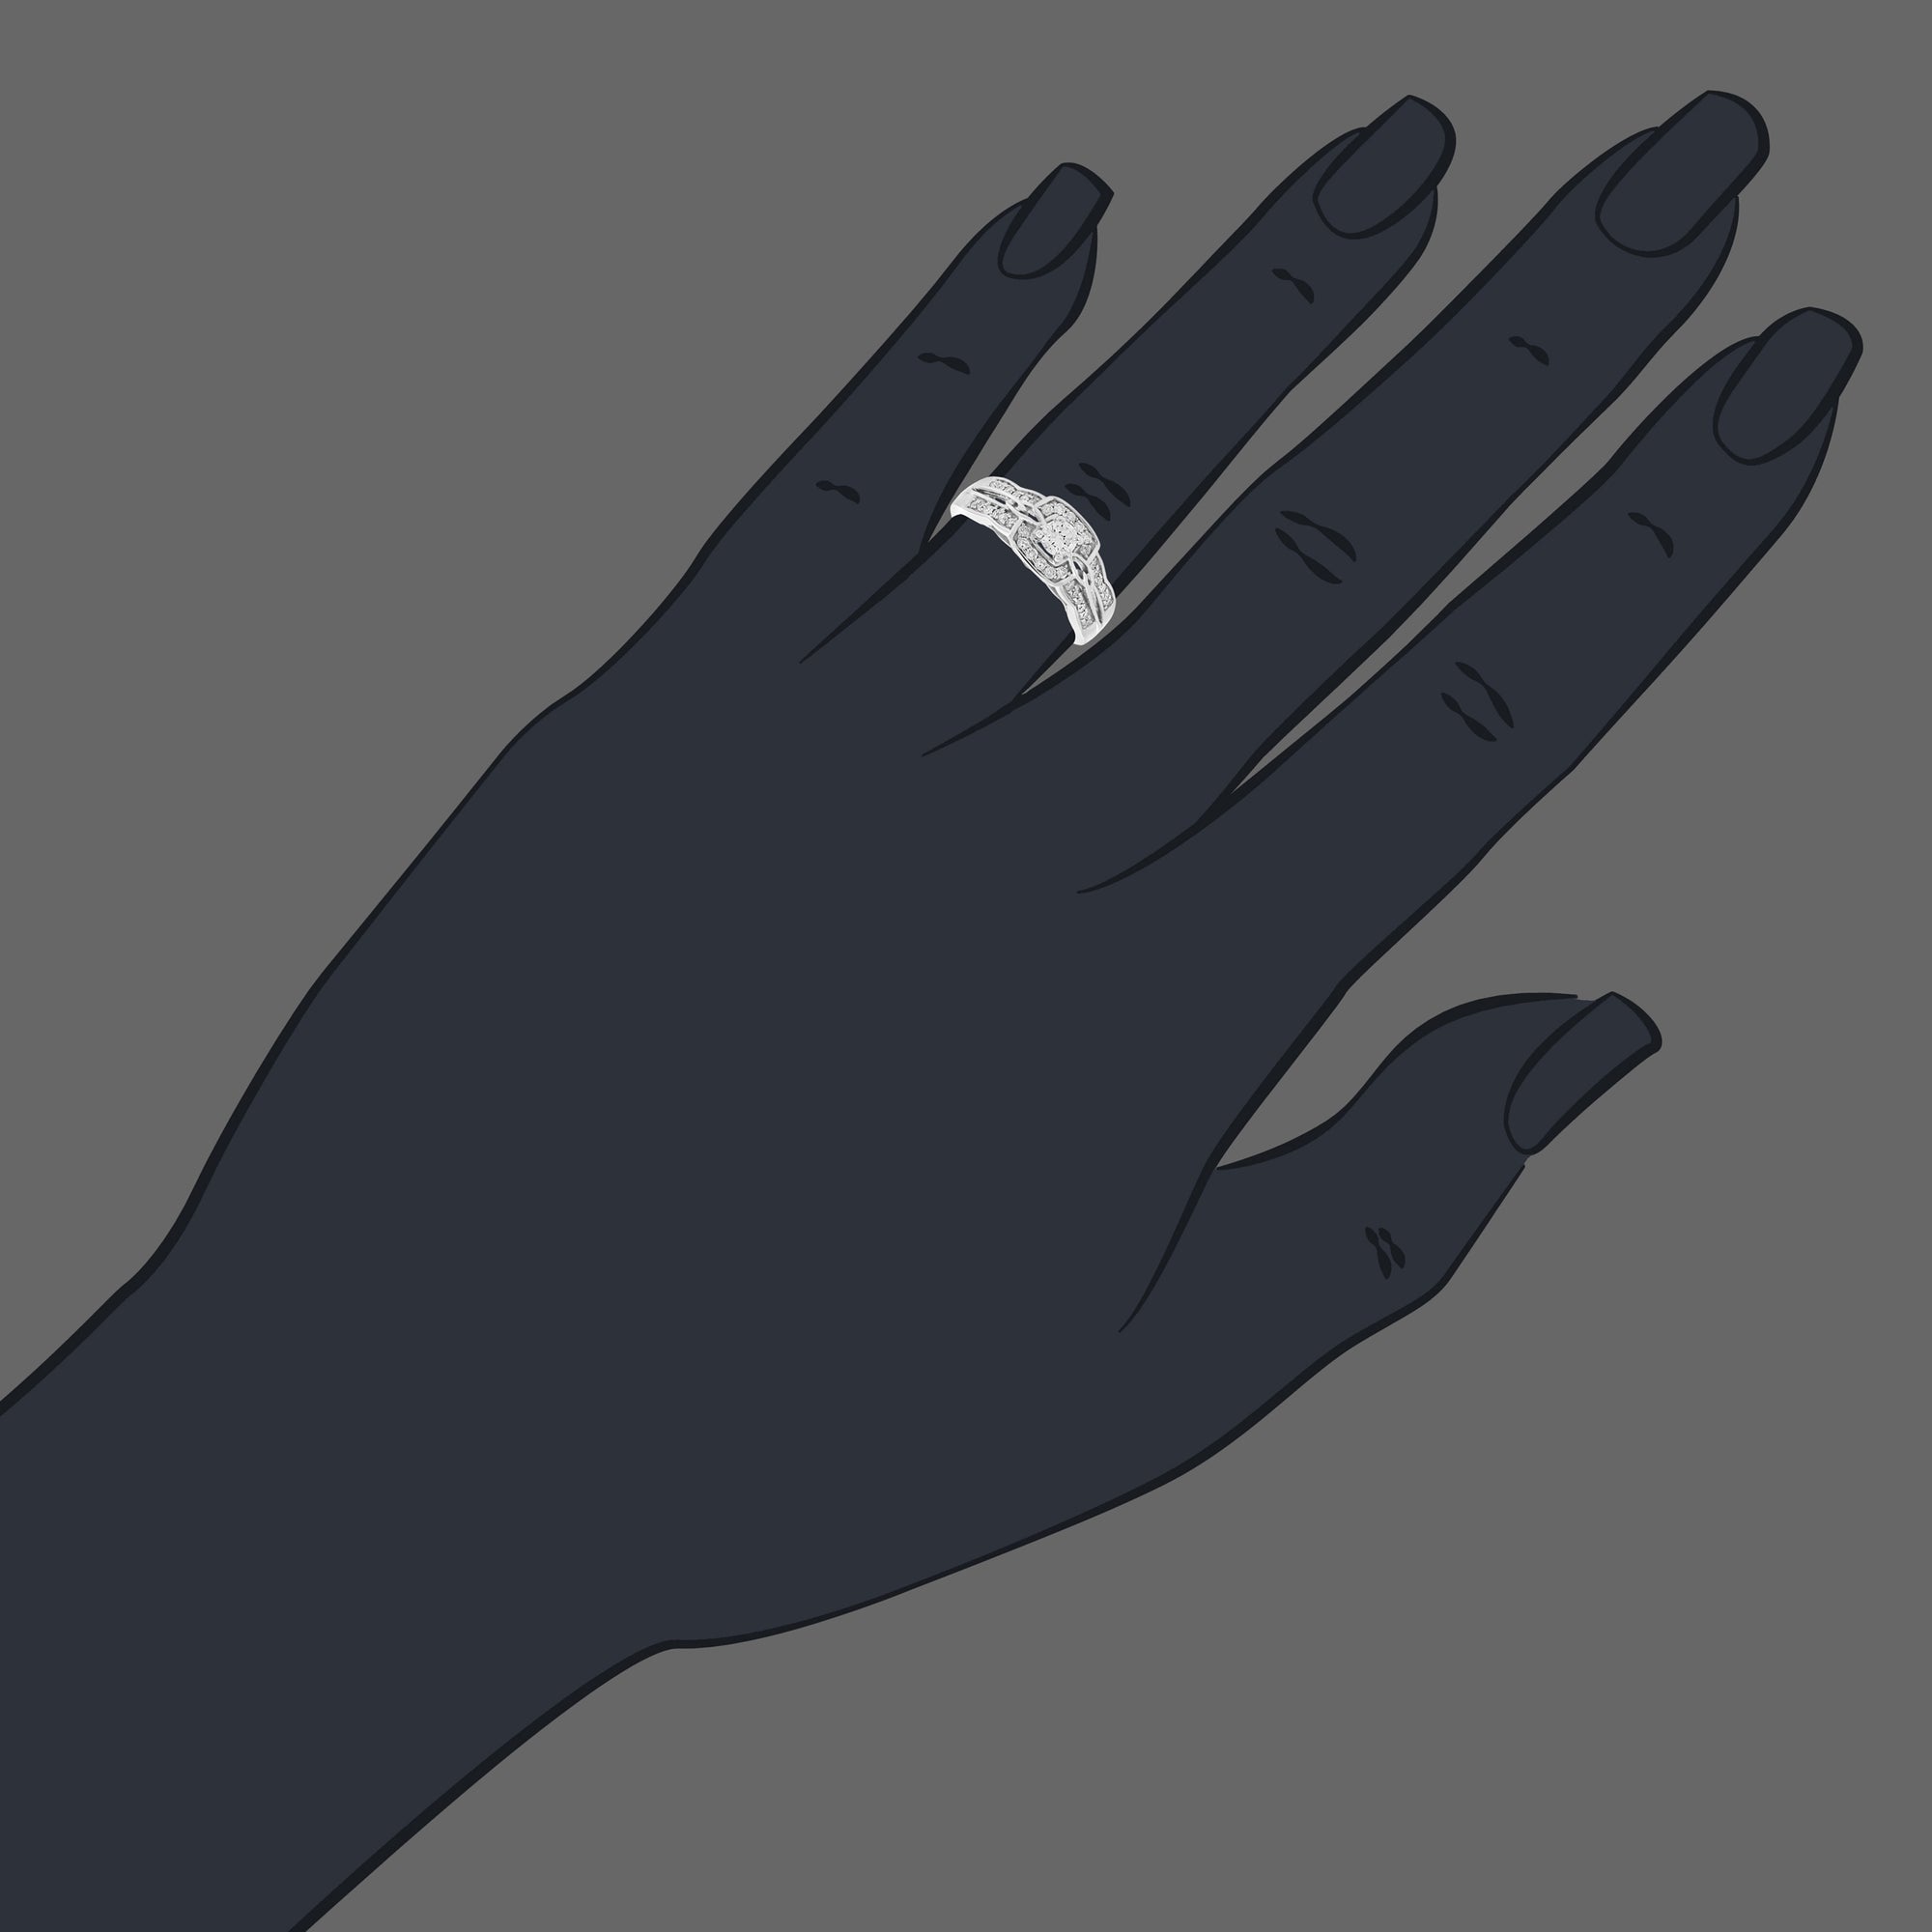 1/2 cttw Diamond Engagement Ring 14K White Gold Cushion Shape Halo Bridal Ring